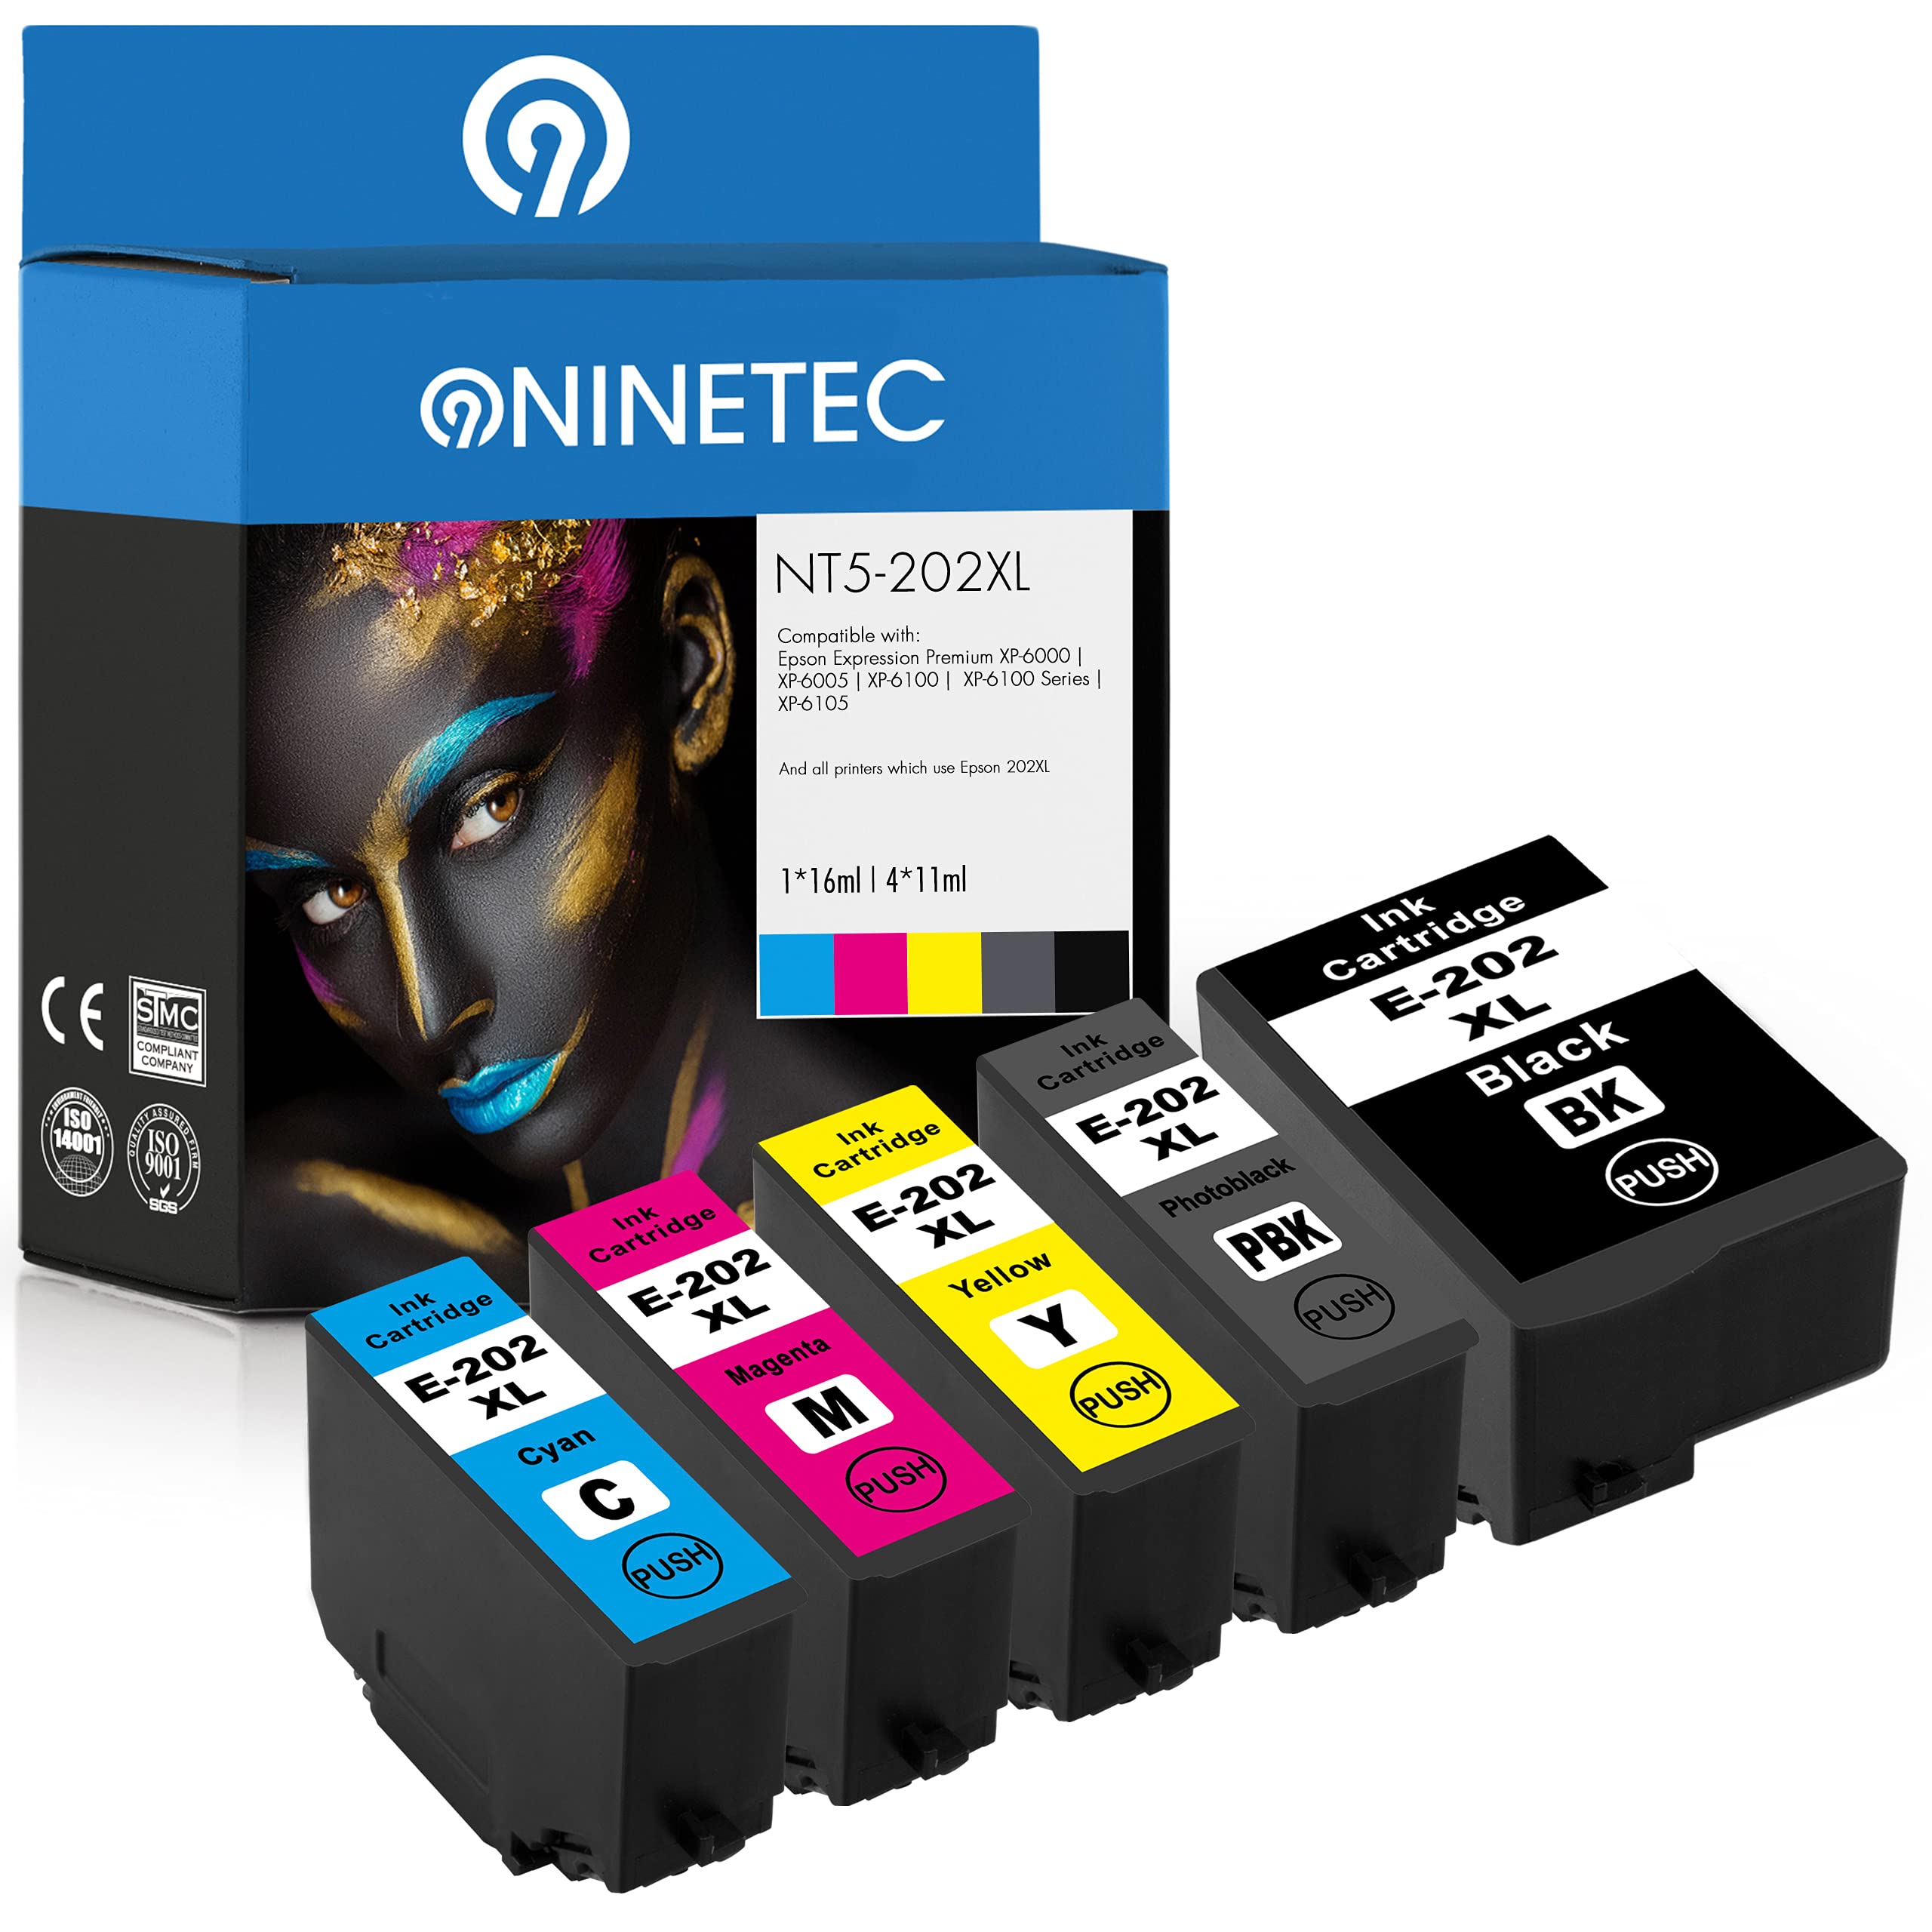 NINETEC 5 Druckerpatronen kompatibel mit Epson 202 XL für Epson XP6000 XP6005 XP6100 XP6100 Series XP6105 Multipack NT5-202XL